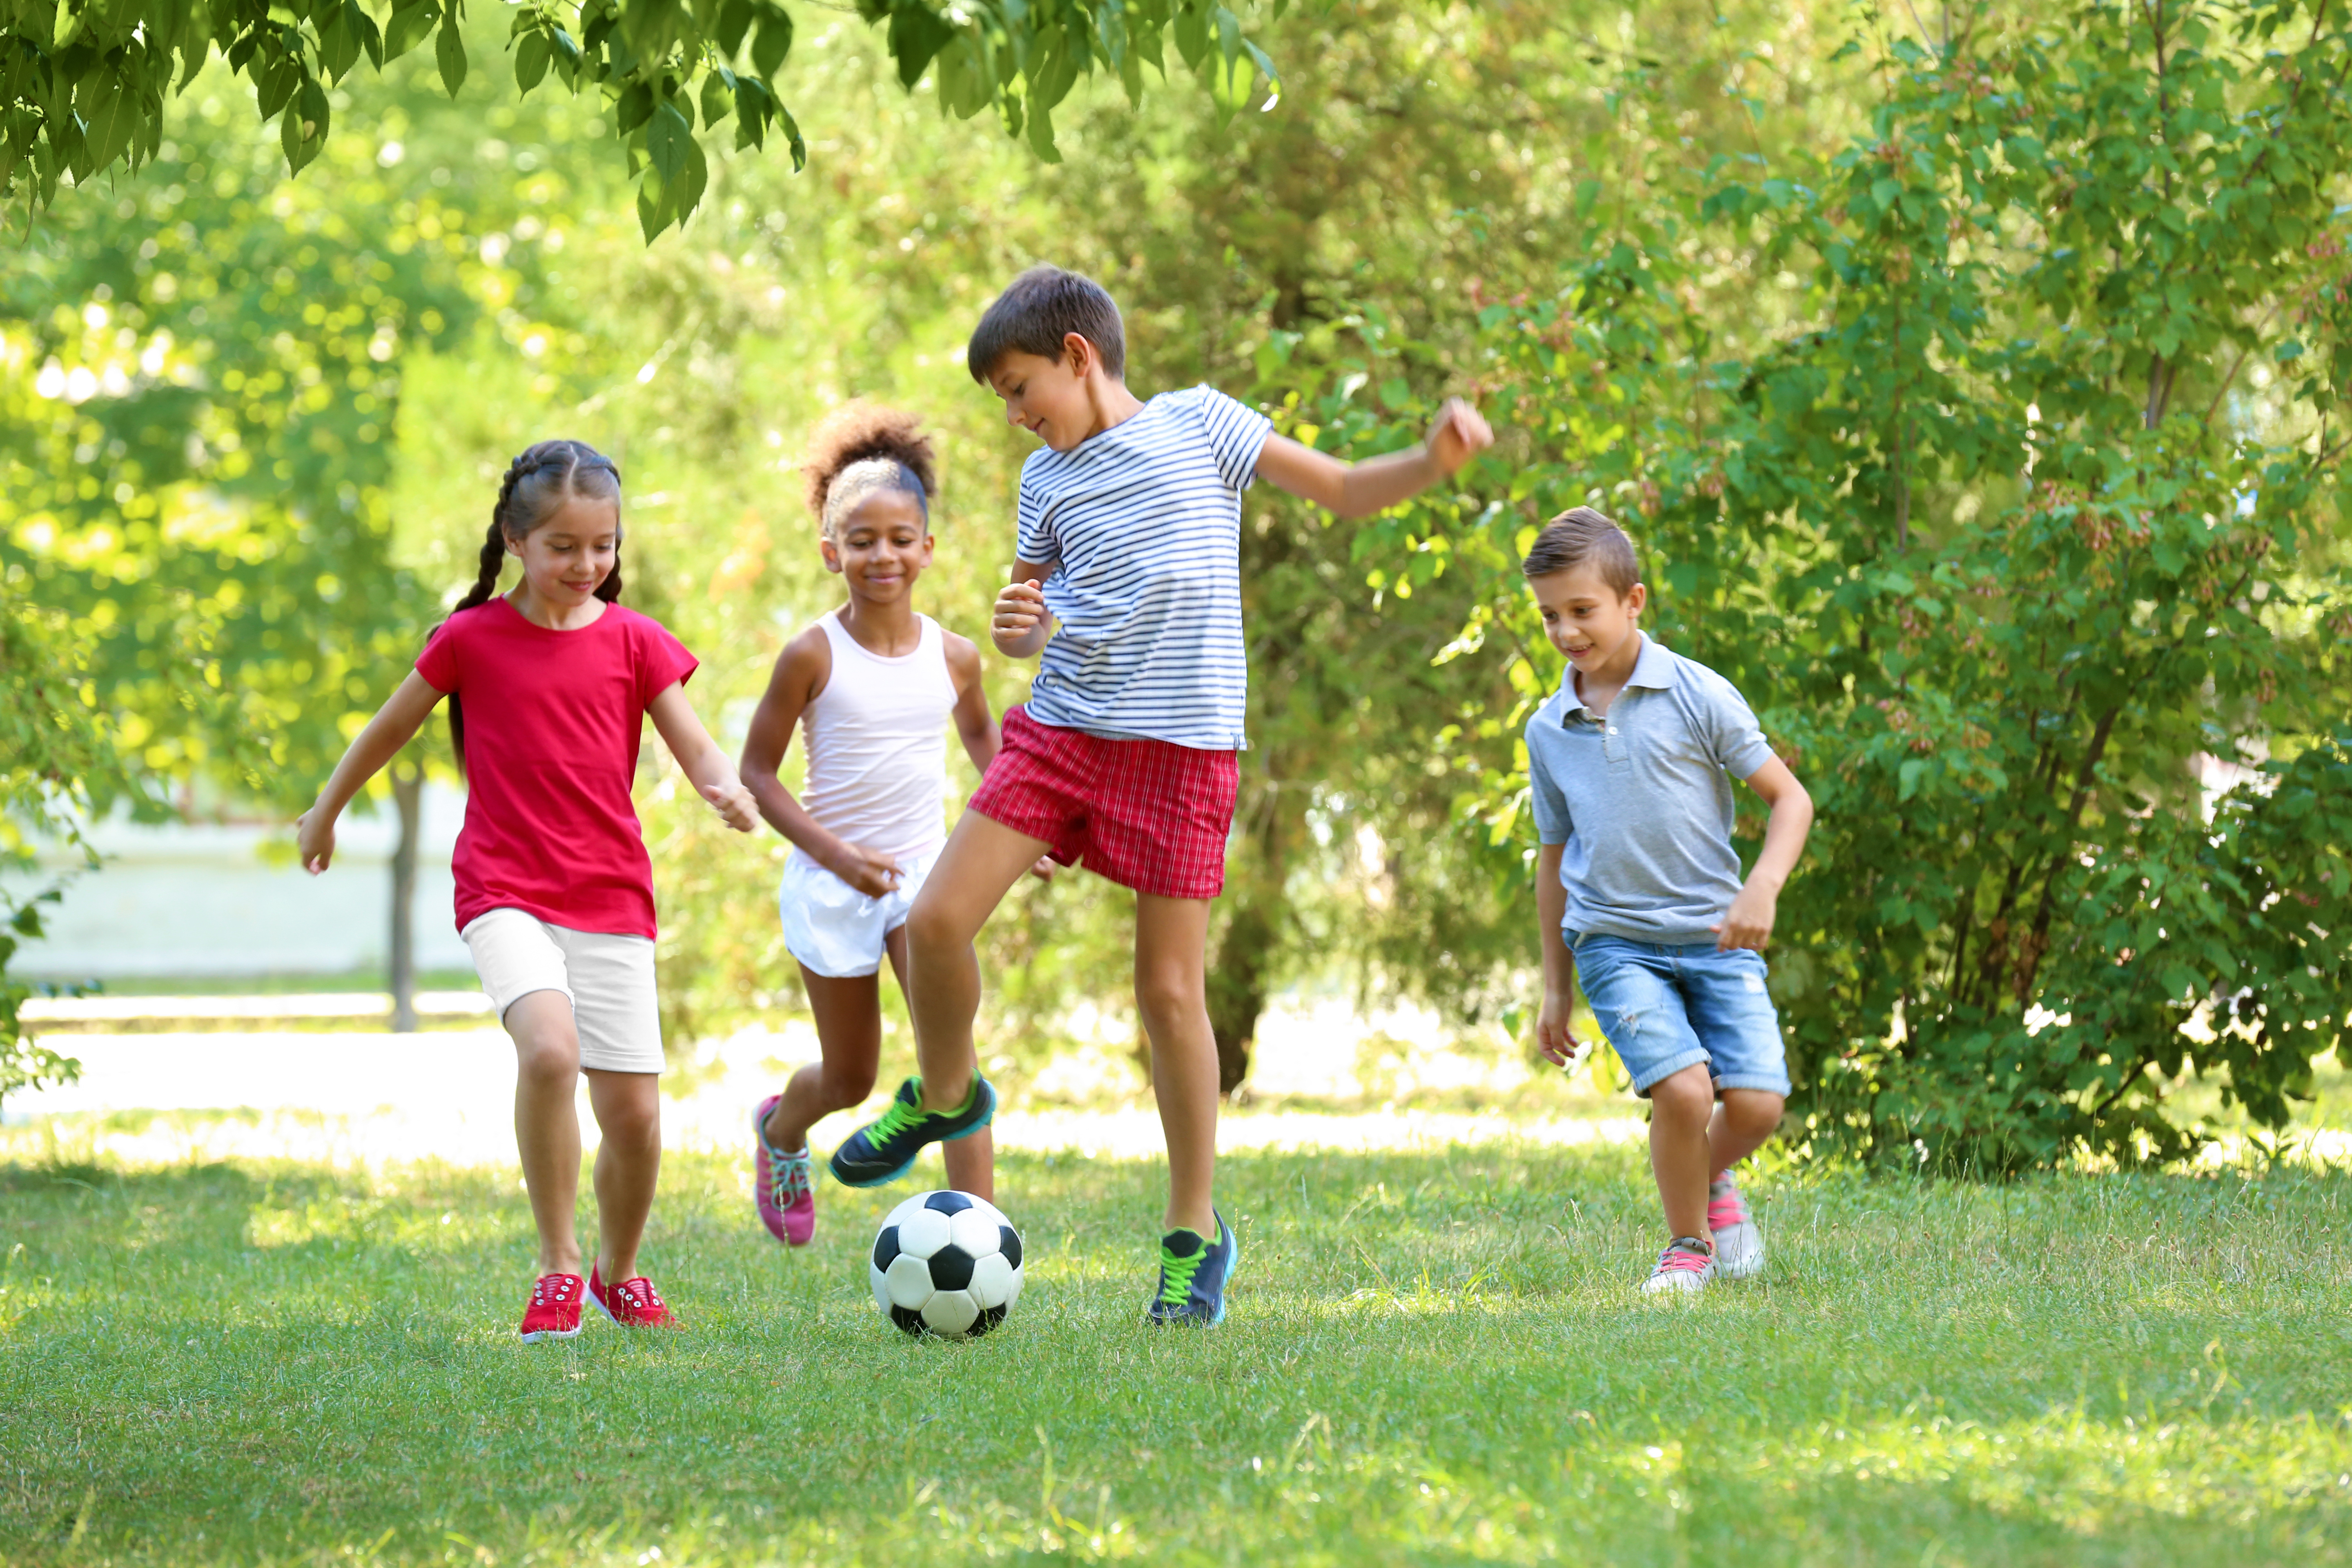 Do you enjoy playing sports. Активные игры для детей. Дети в парке. Дети играющие на свежем воздухе. Дети улицы.